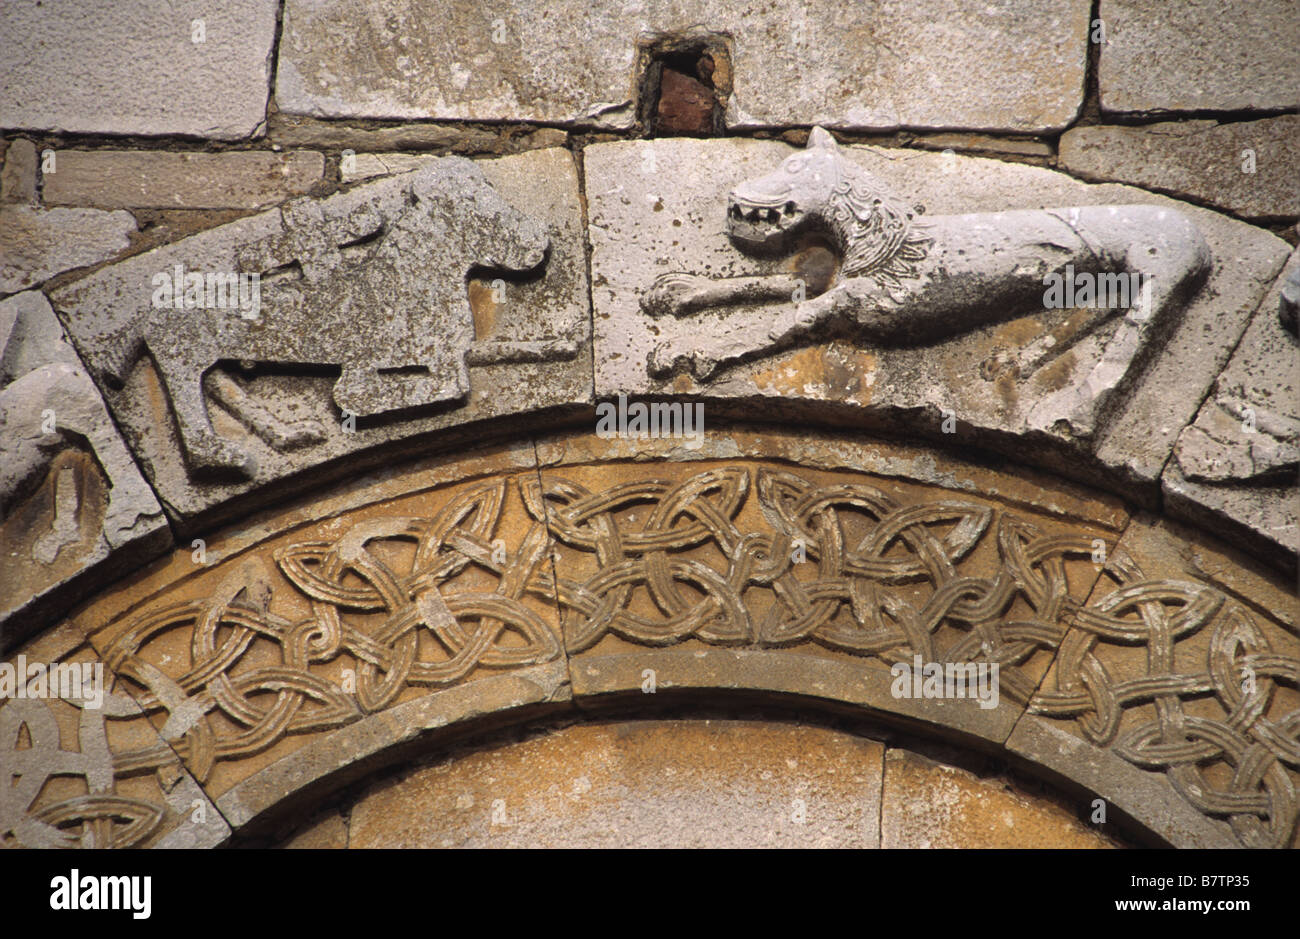 Sculptures sur pierre des animaux y compris un cheval avec une croix, cathédrale romane de la Canonica (1119), Mariana, Corse, France Banque D'Images